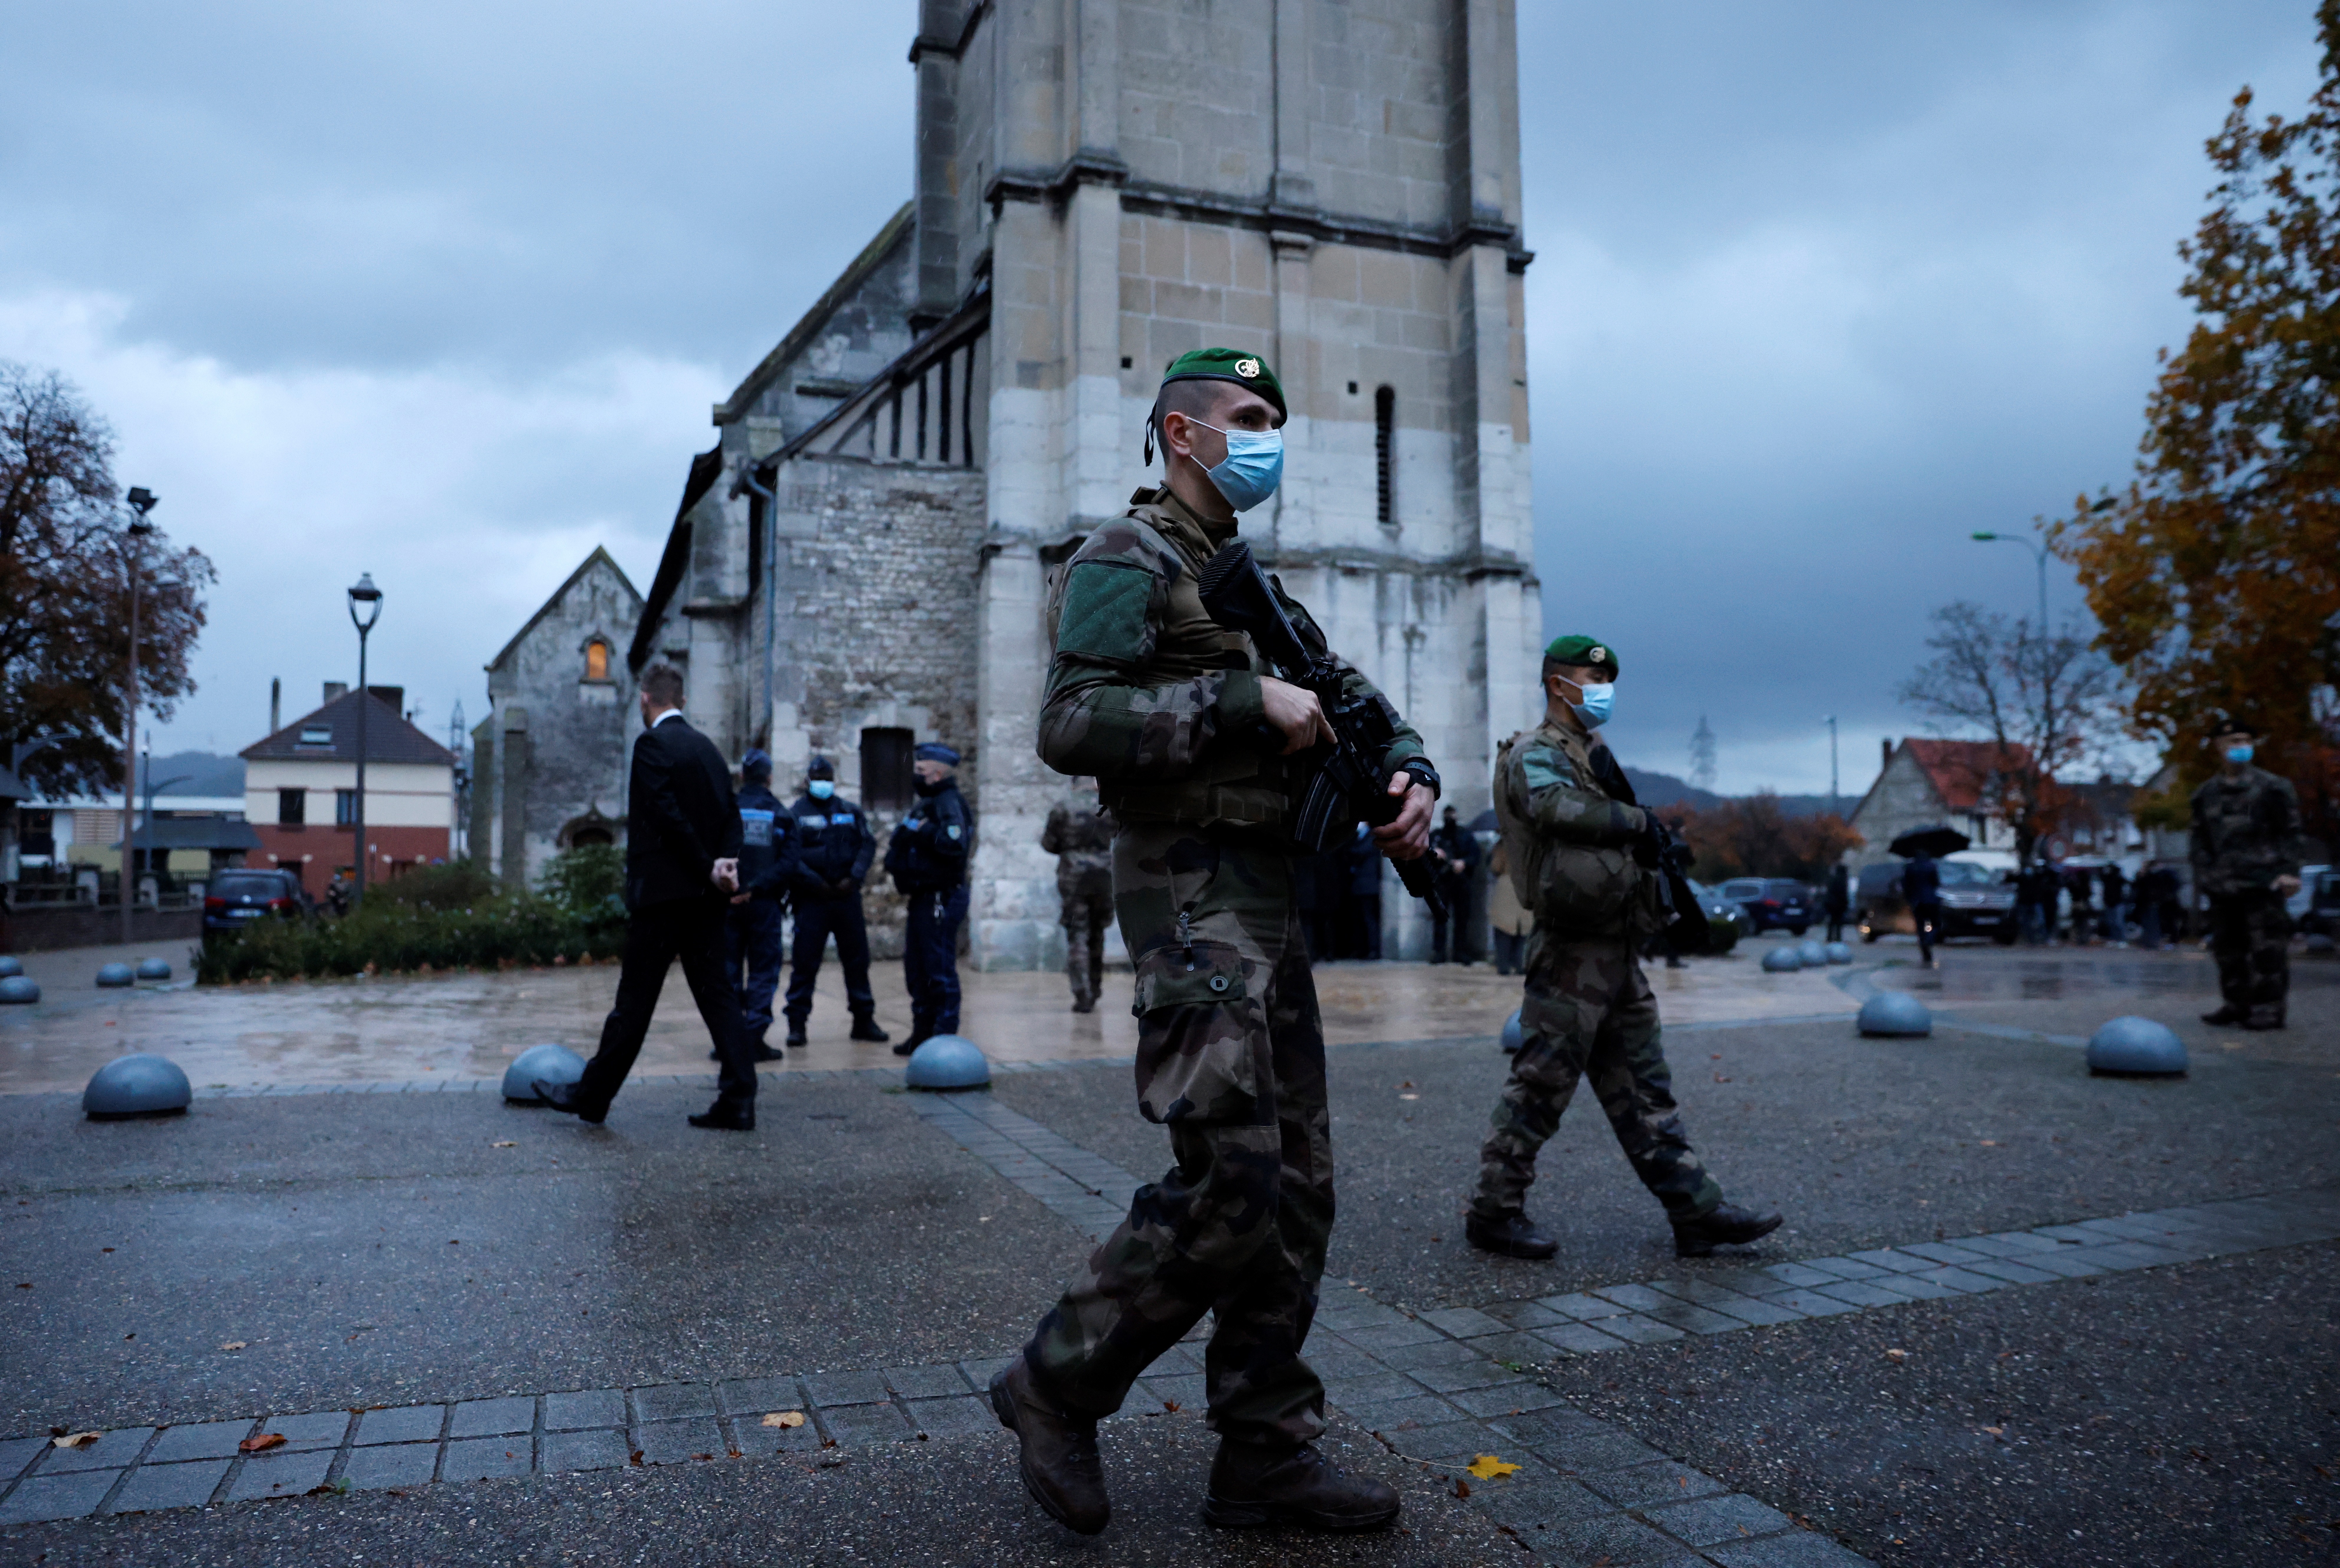 Francia sumó un cuarto detenido tras el atentado de Niza